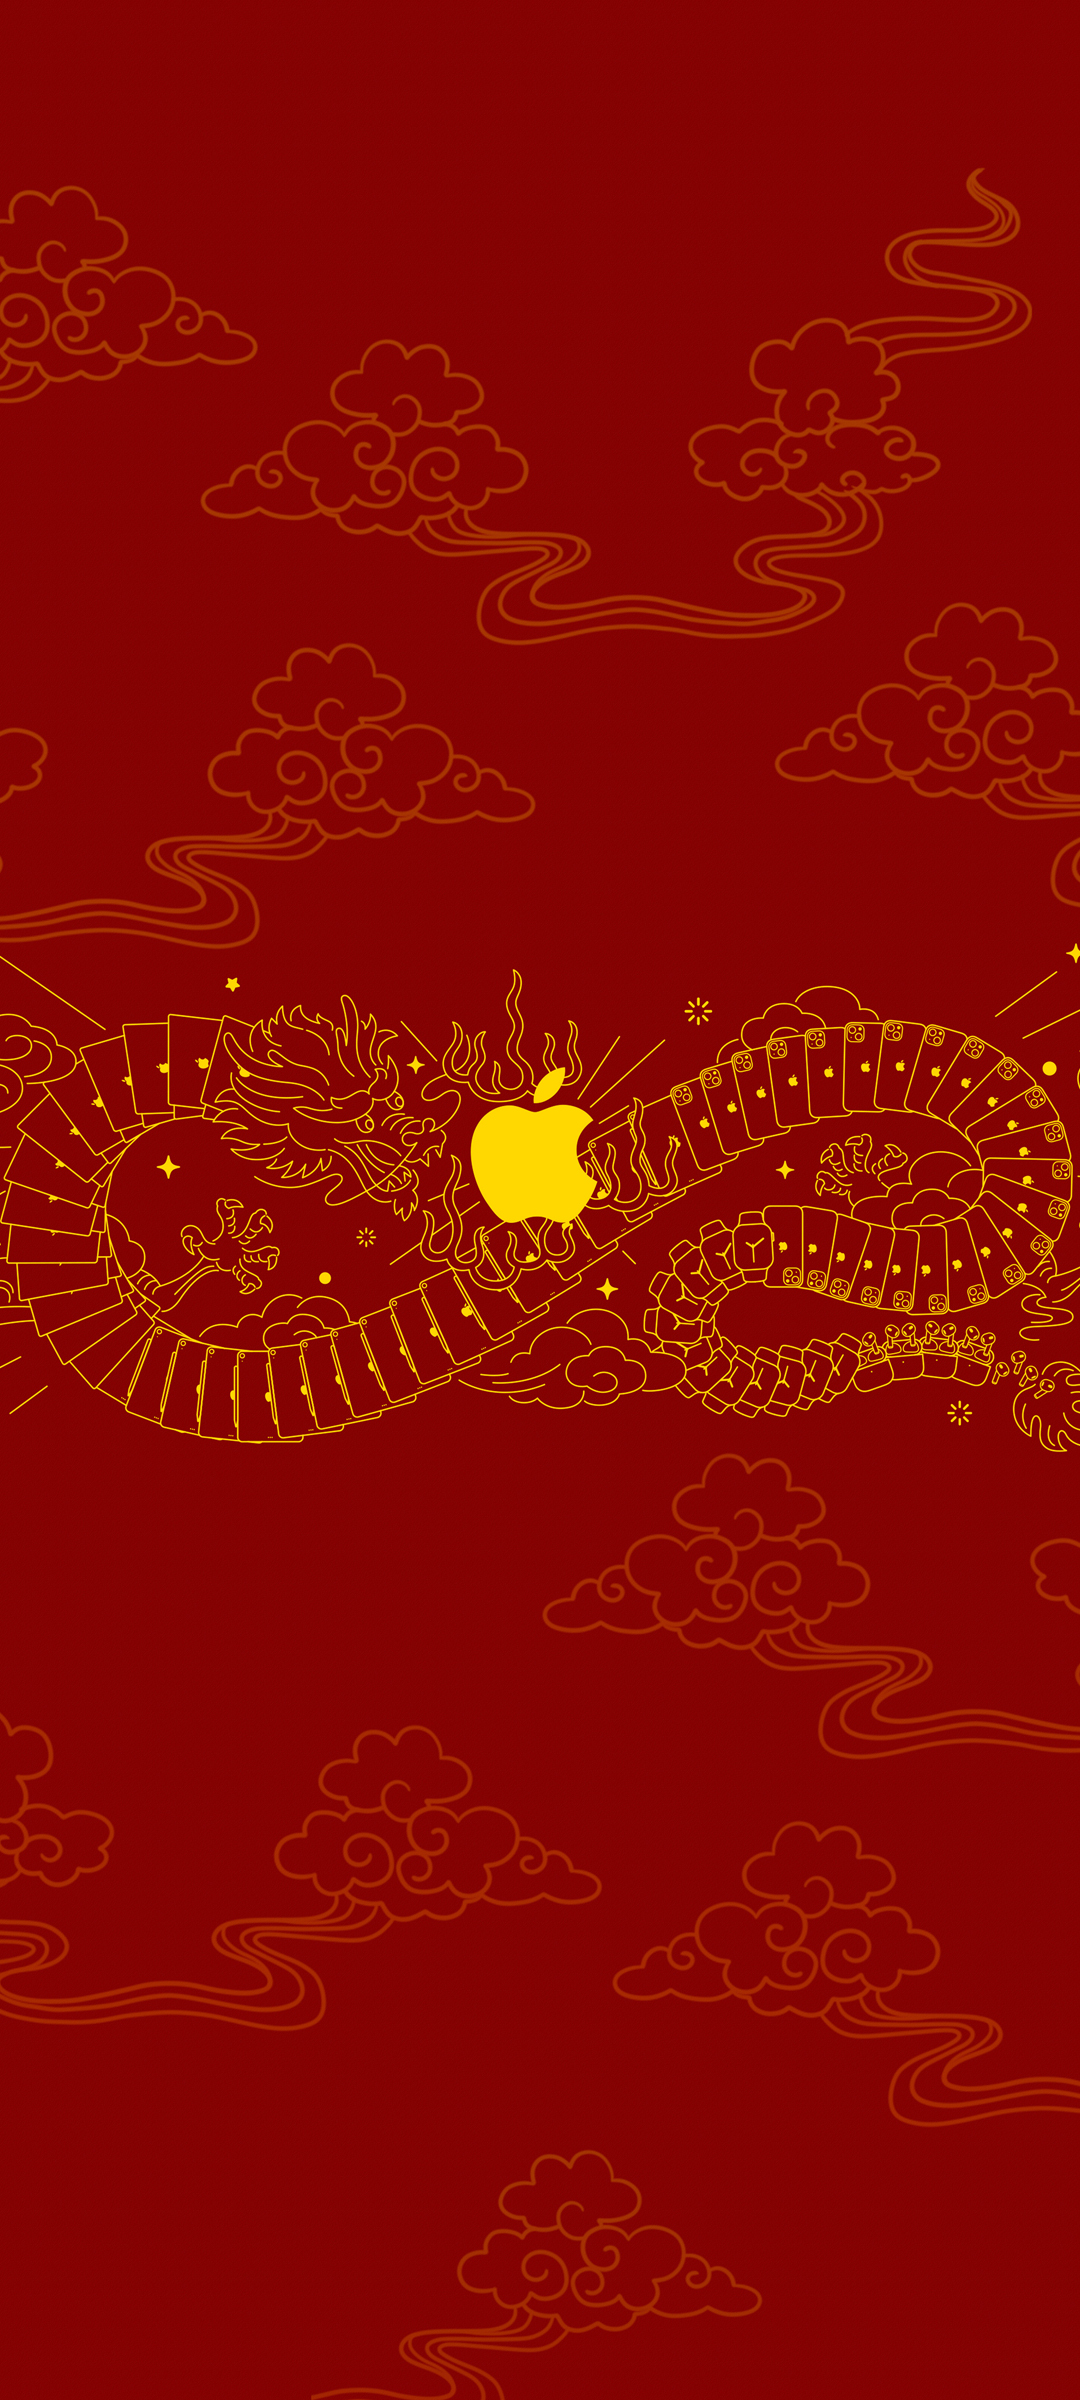 苹果 龙年 红色背景 手机壁纸图片